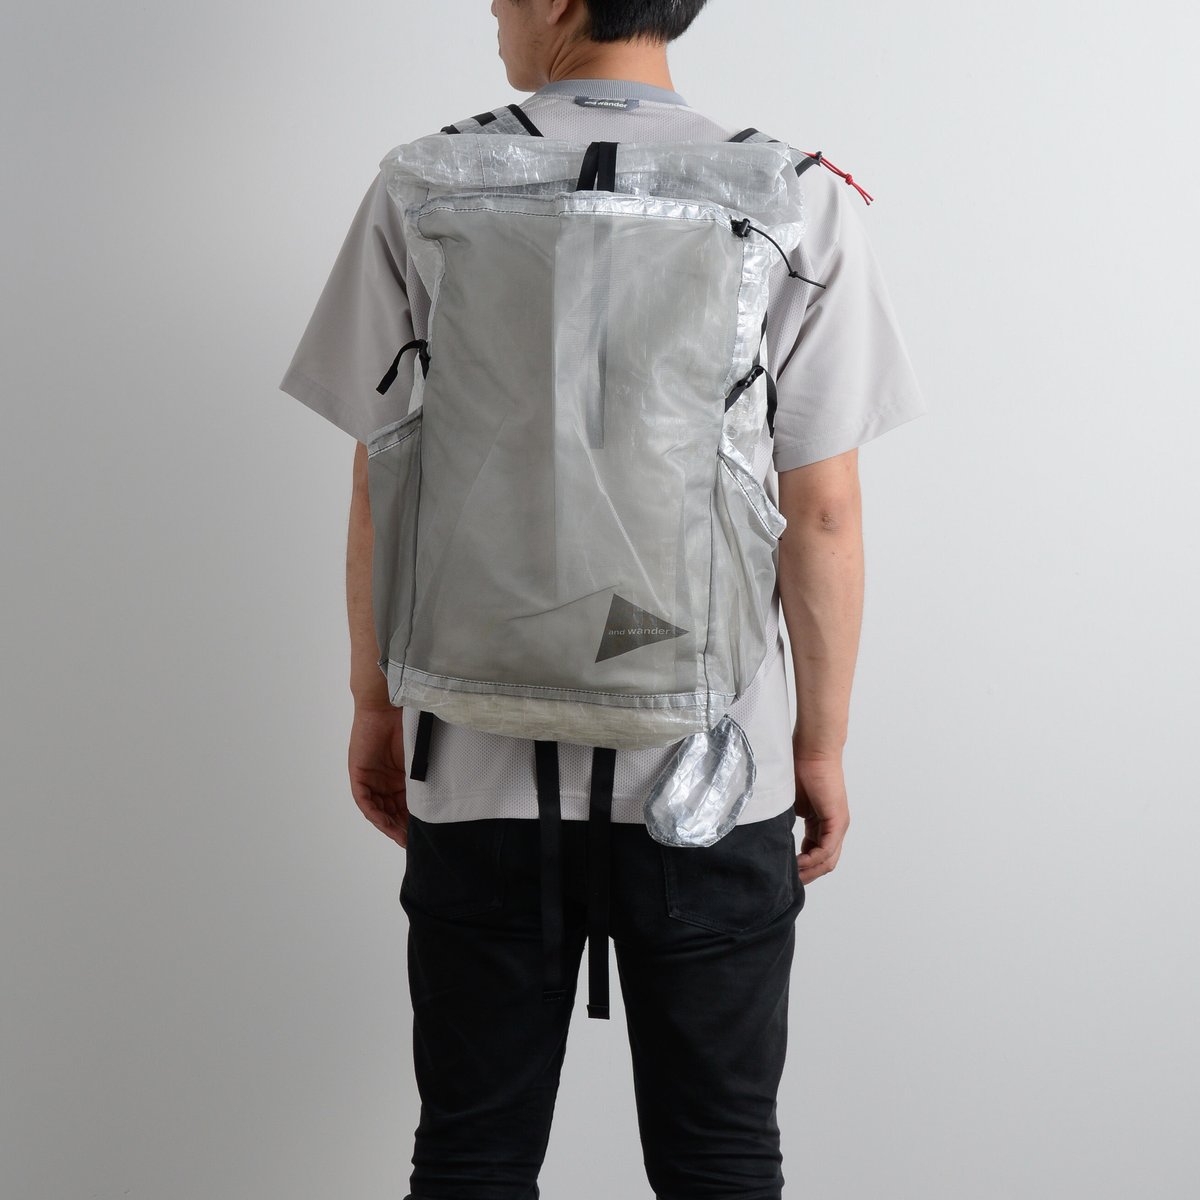 and wander / Cuben fiber backpack (260g)